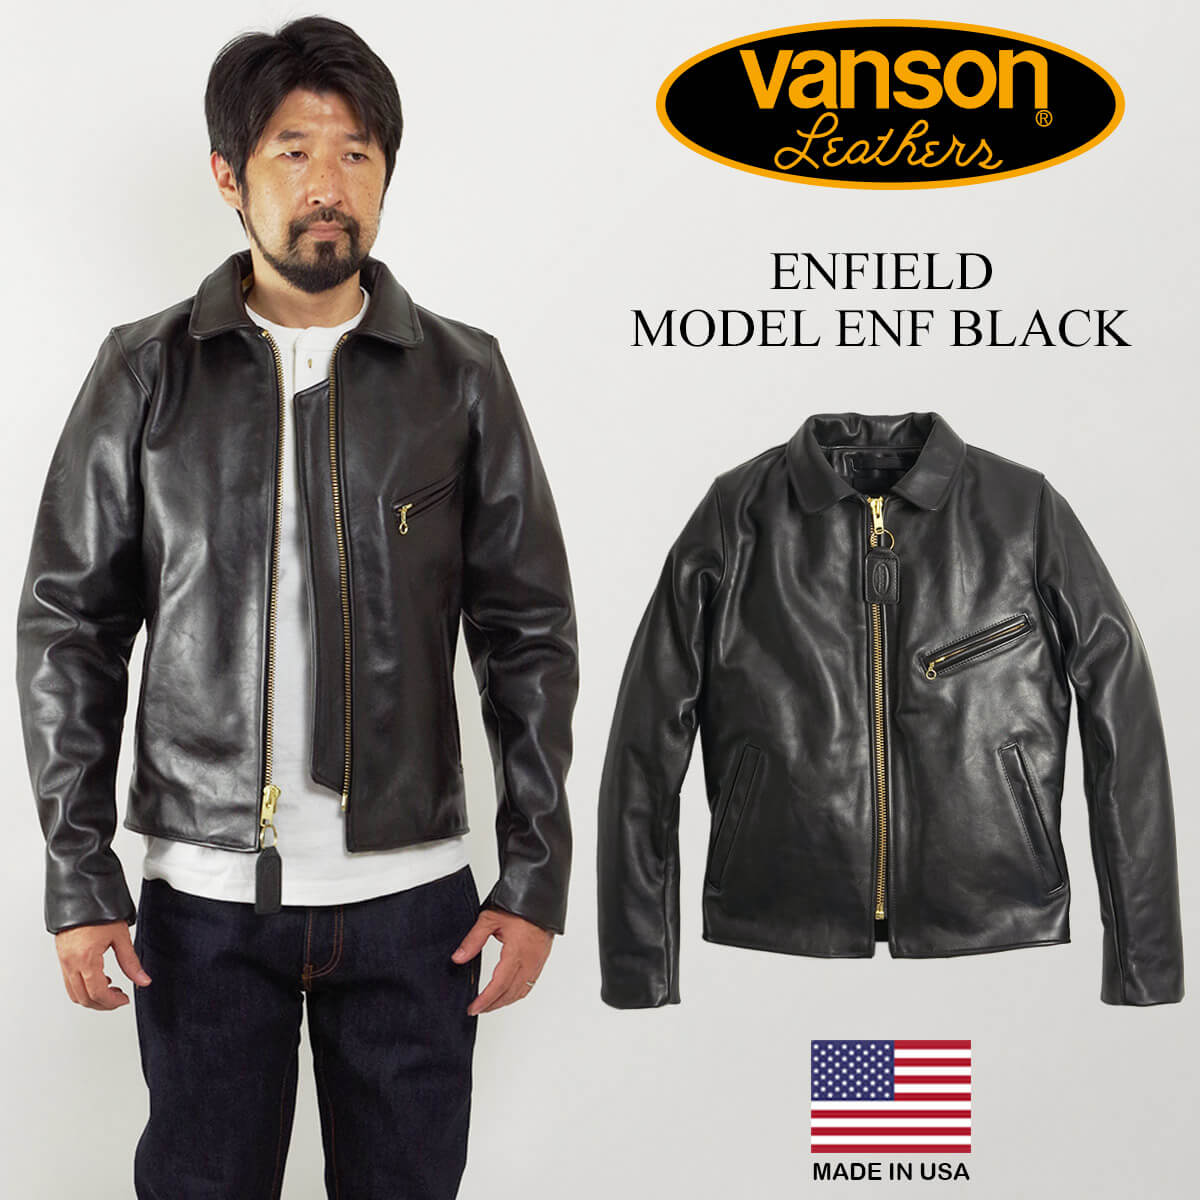 楽天市場】バンソン VANSON J 3/4 カーコート ブラック (アメリカ製